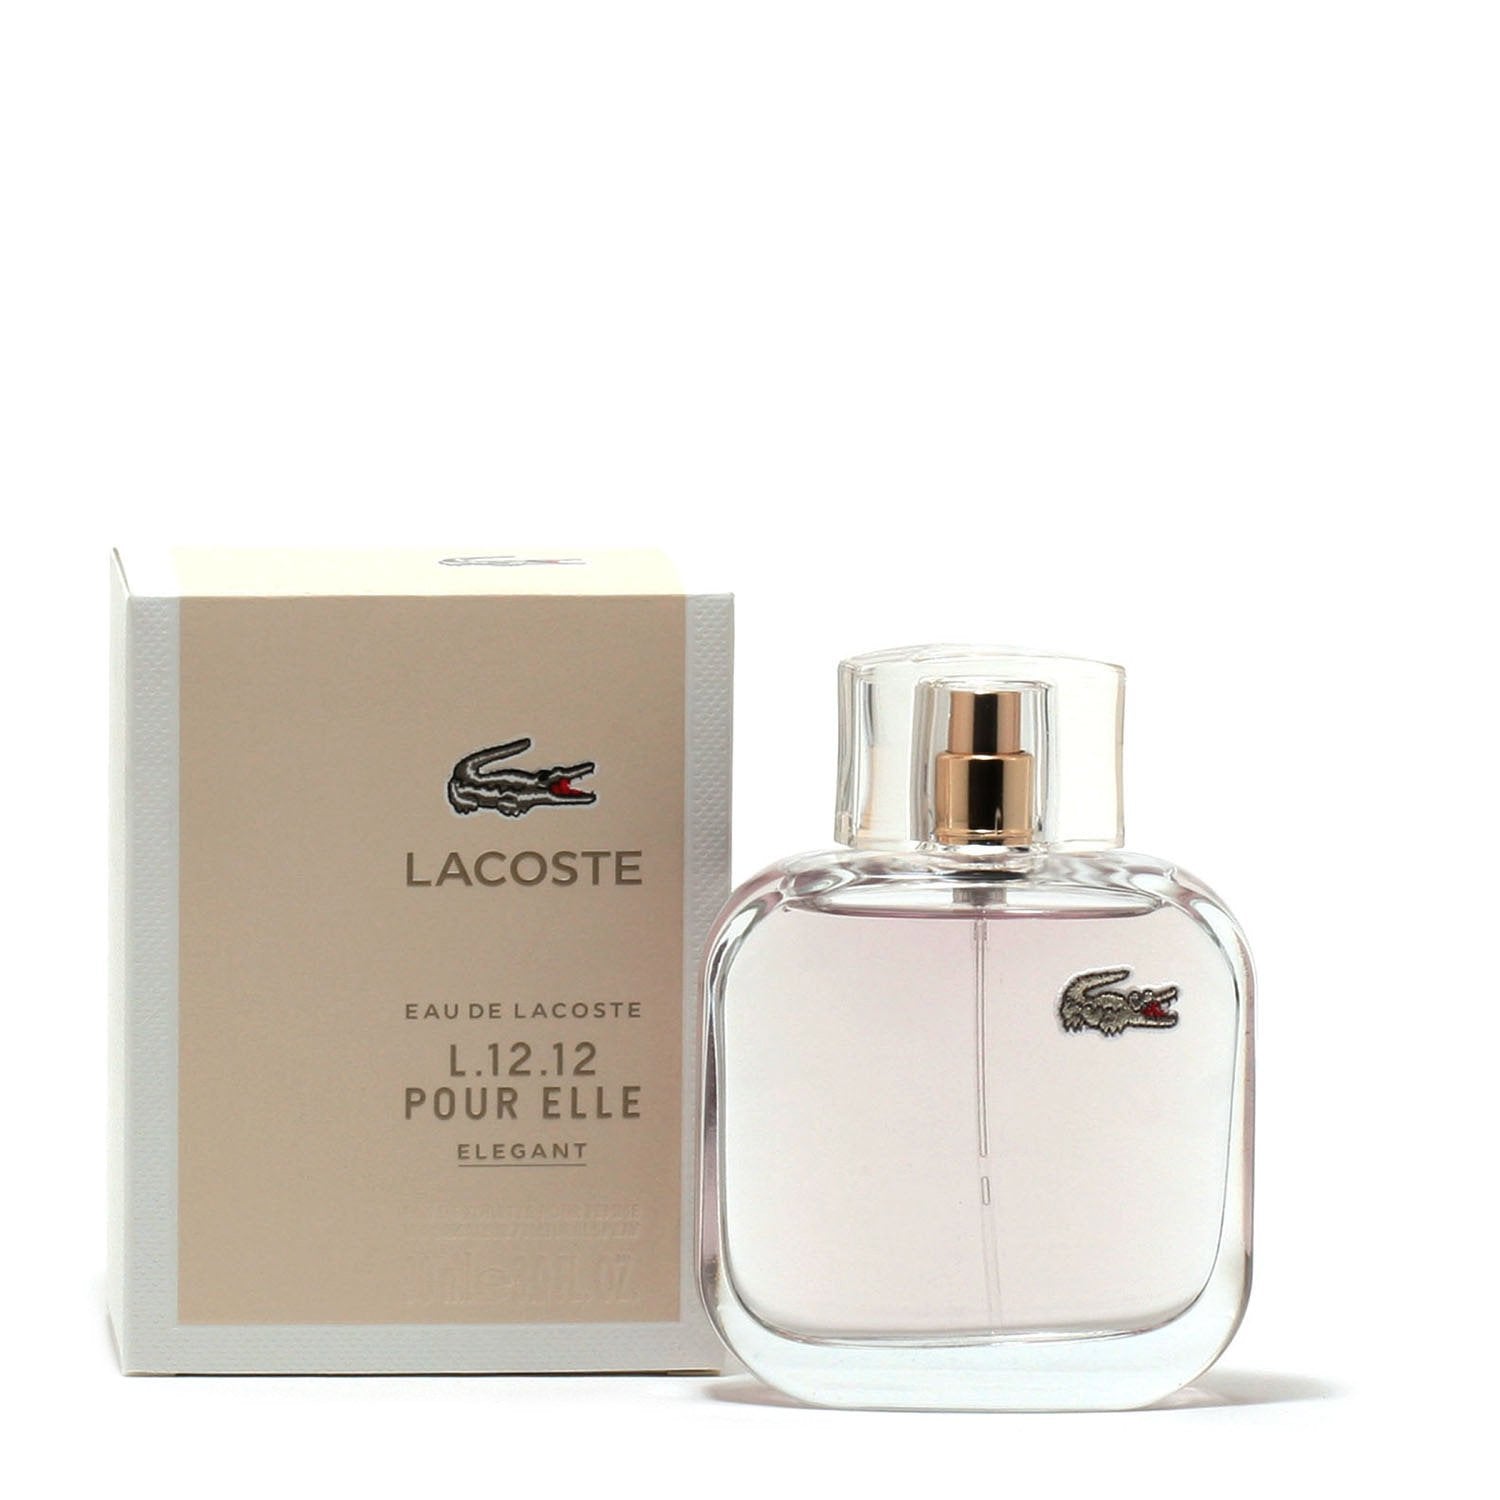 Perfume - LACOSTE EAU DE LACOSTE L.12.12 POUR ELLE ELEGANT FOR WOMEN - EAU DE TOILETTE  SPRAY, 3.0 OZ